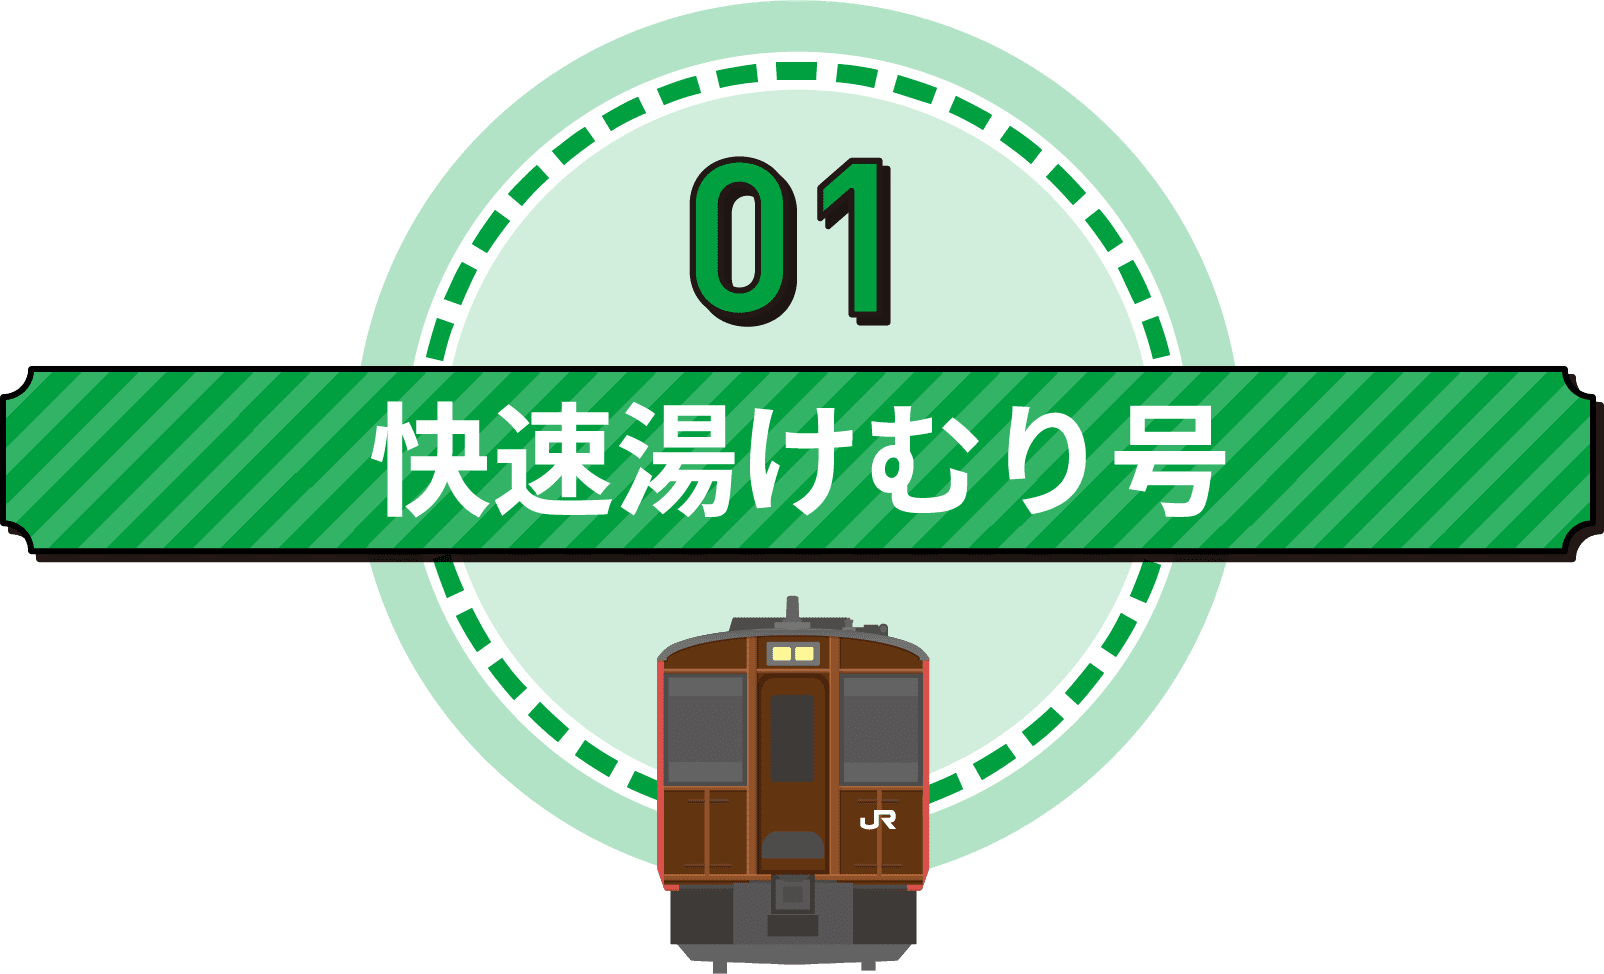 JR東北本線・JR陸羽東線・快速湯けむり号・キハ110系